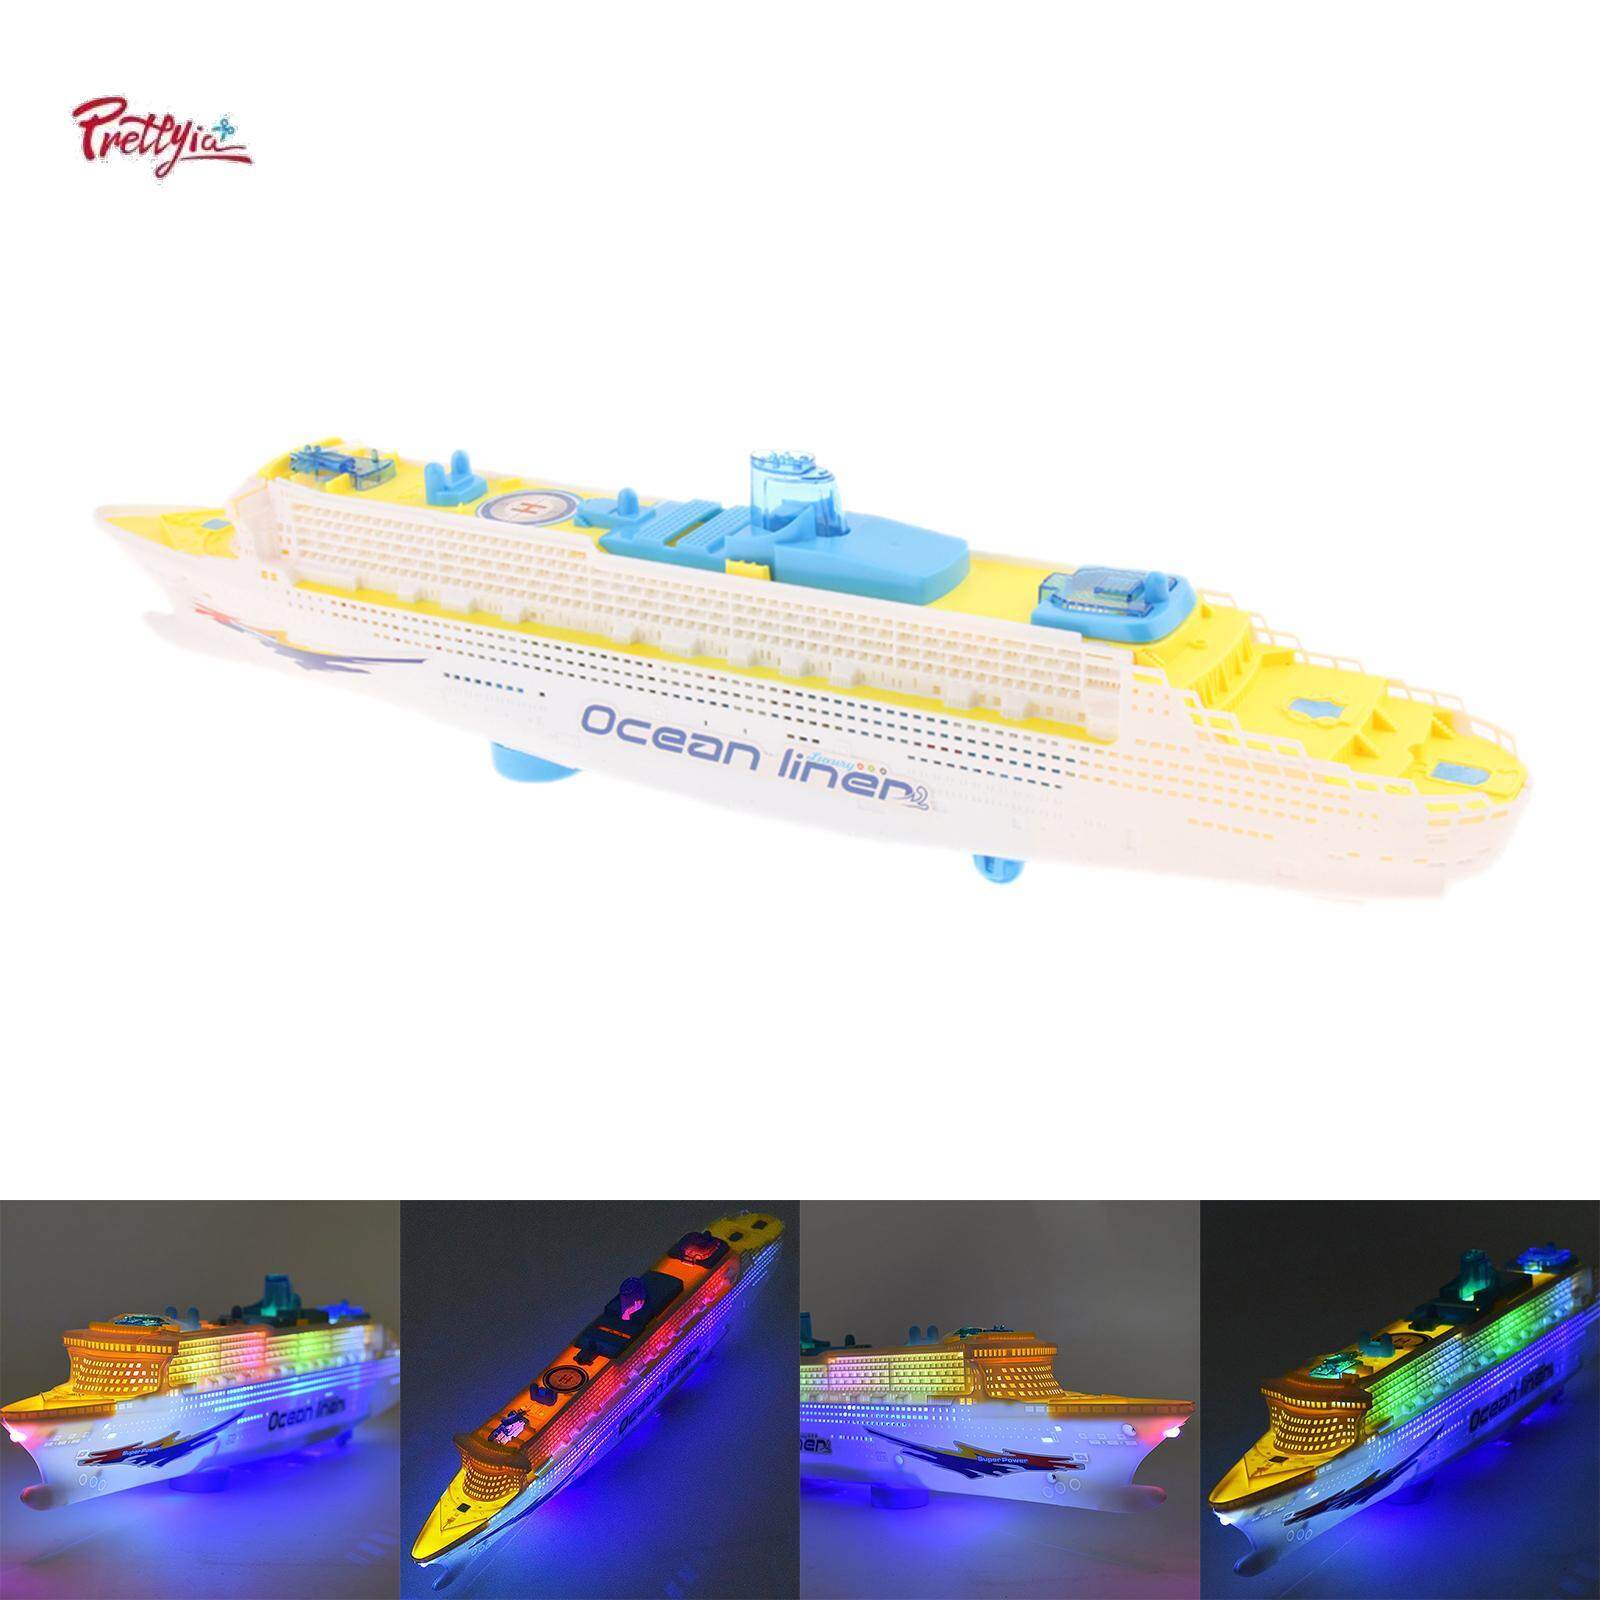 Prettyia lót thuyền đồ chơi chạy điện ánh sáng đèn LED tiếng còi